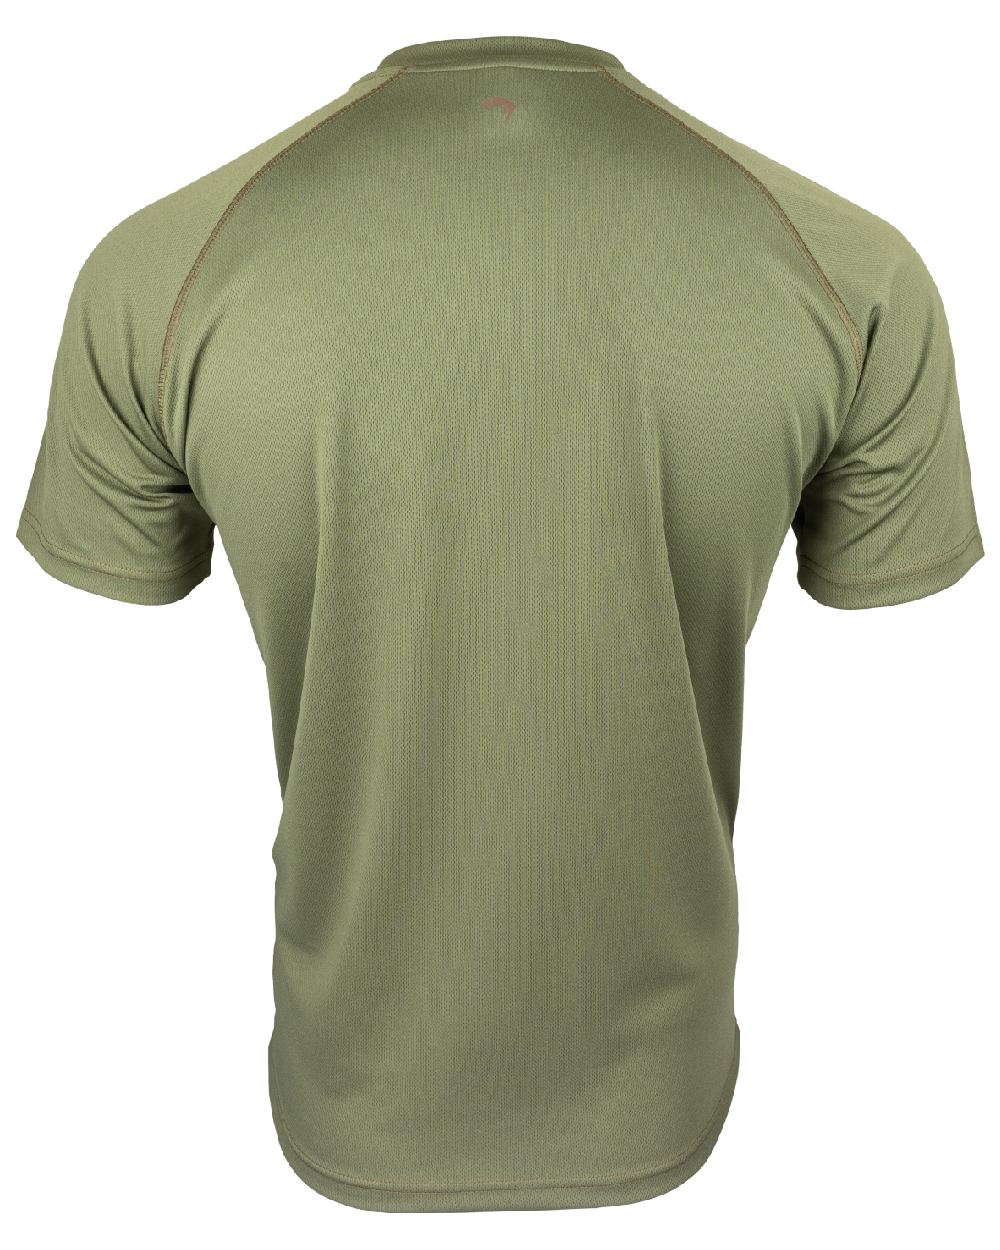 Viper Mesh-Tech T-Shirt in Green 